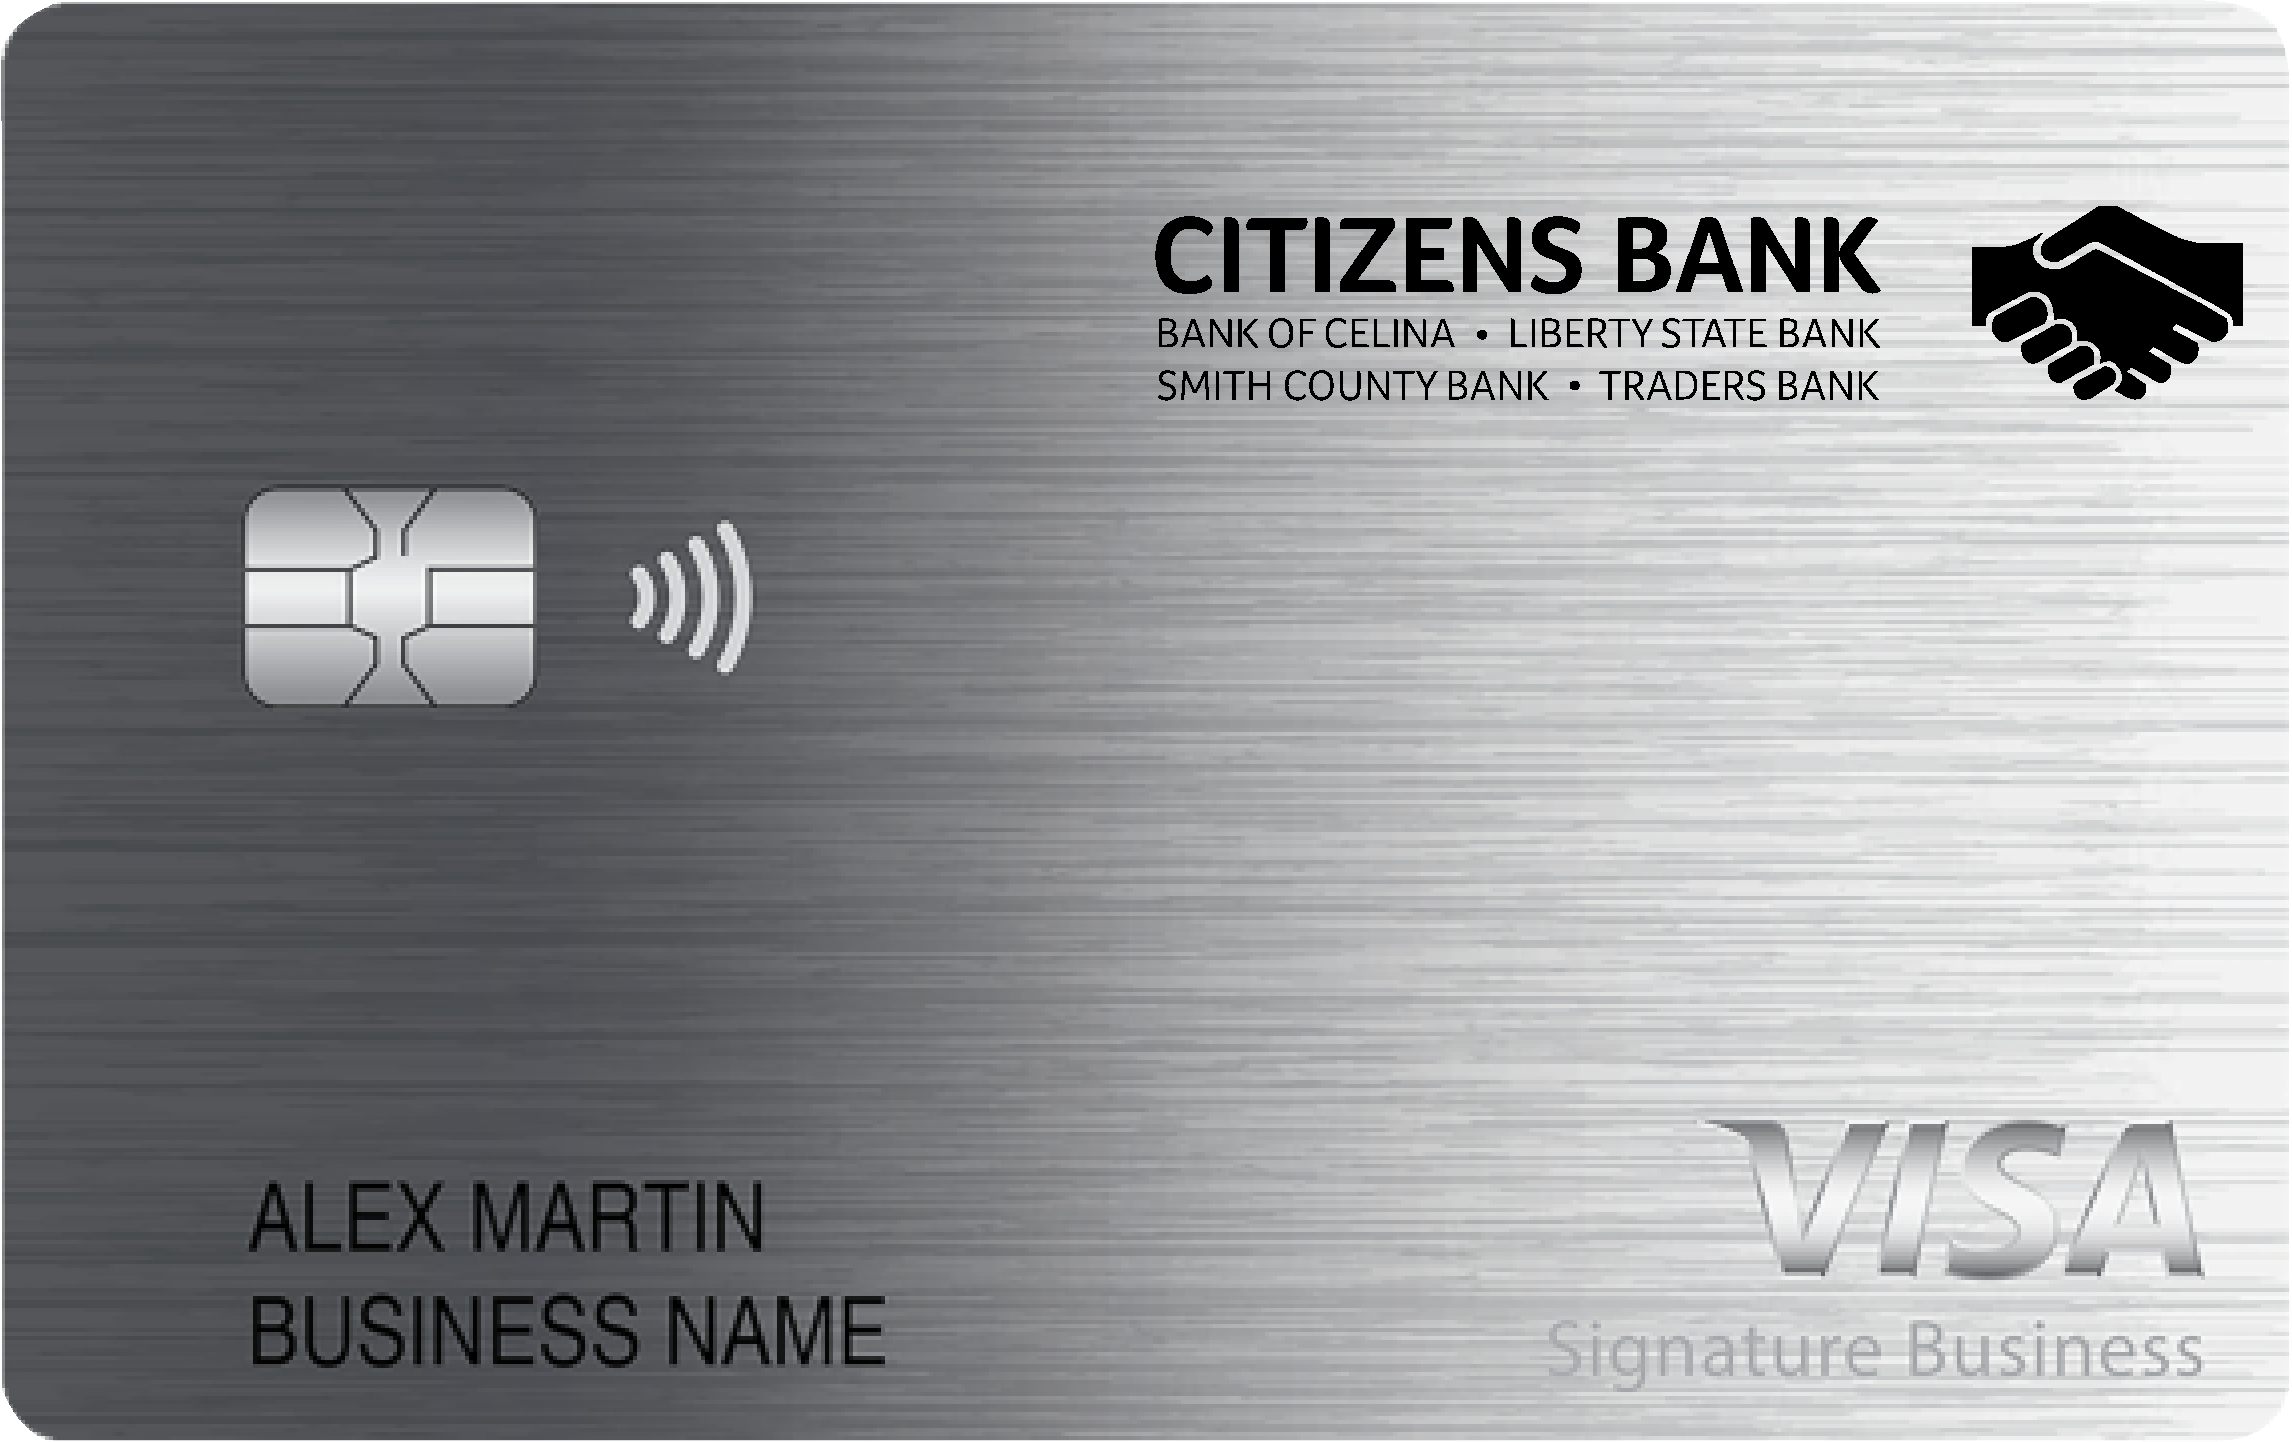 Citizens Bank Smart Business Rewards Card